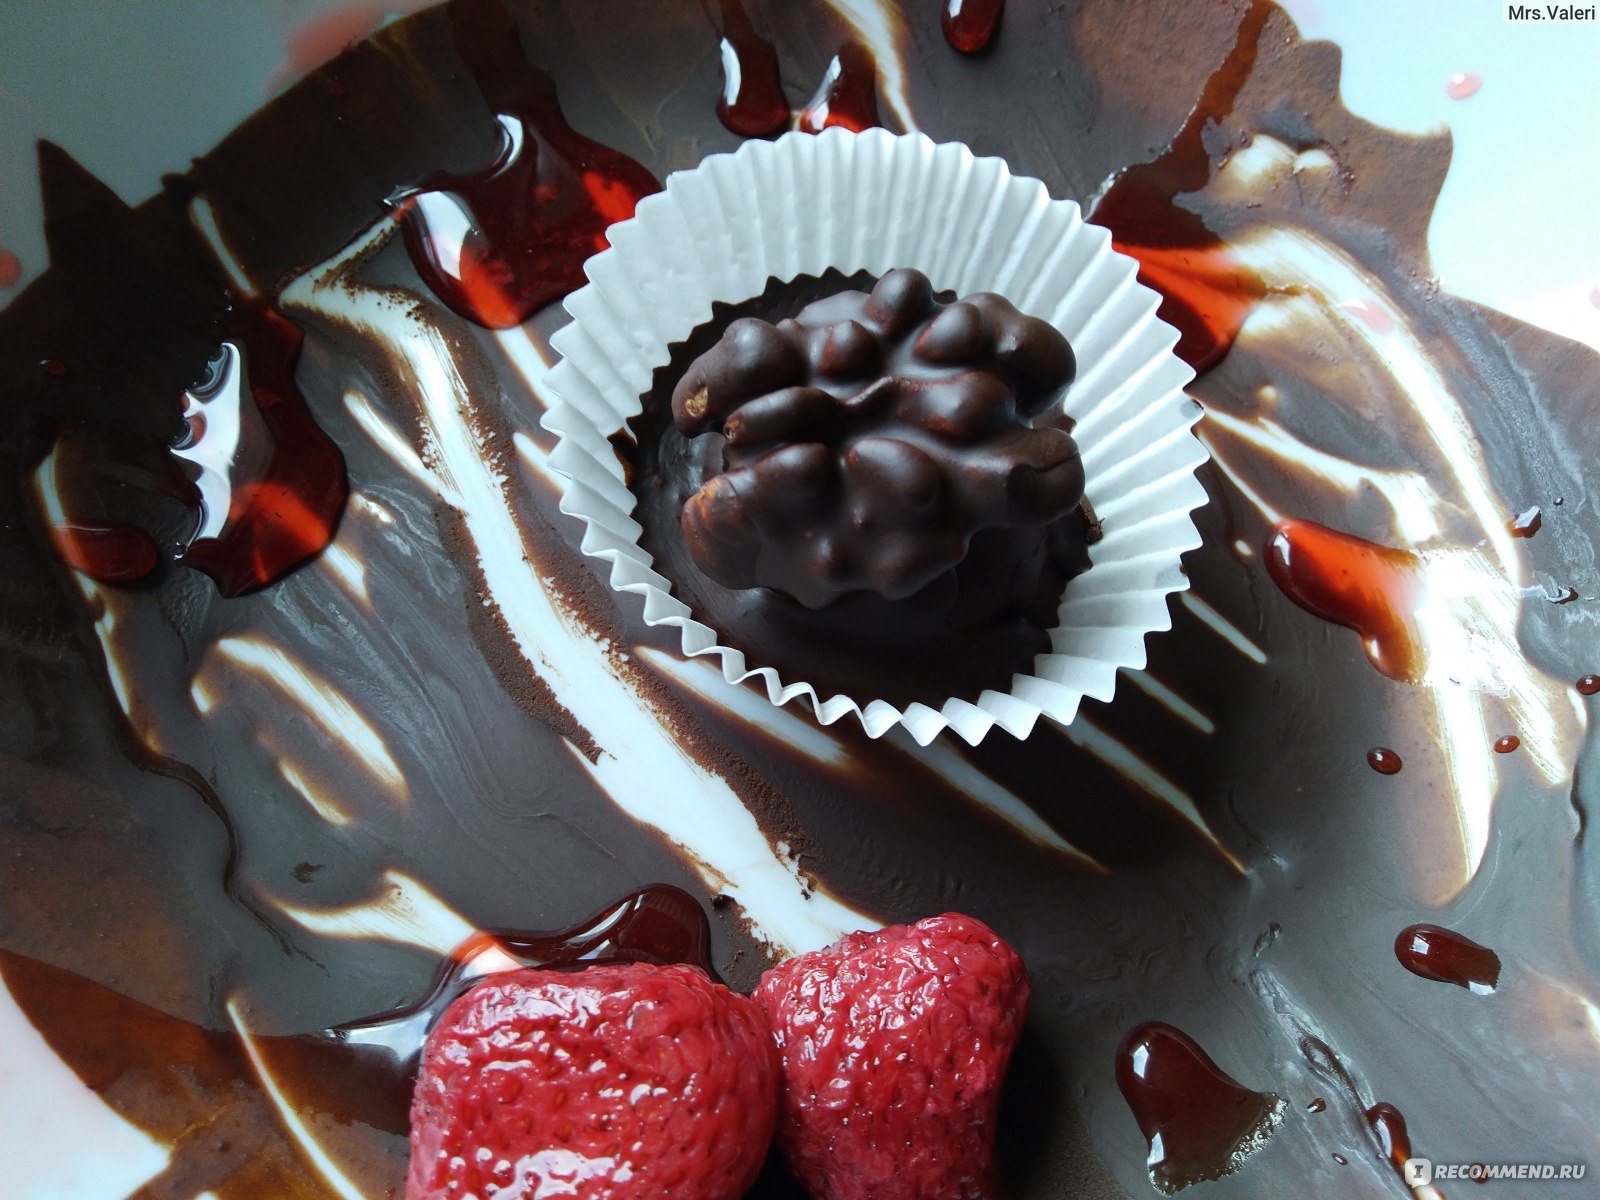 Конфеты Инжир в шоколаде с орехами, ликером сделанные своими руками